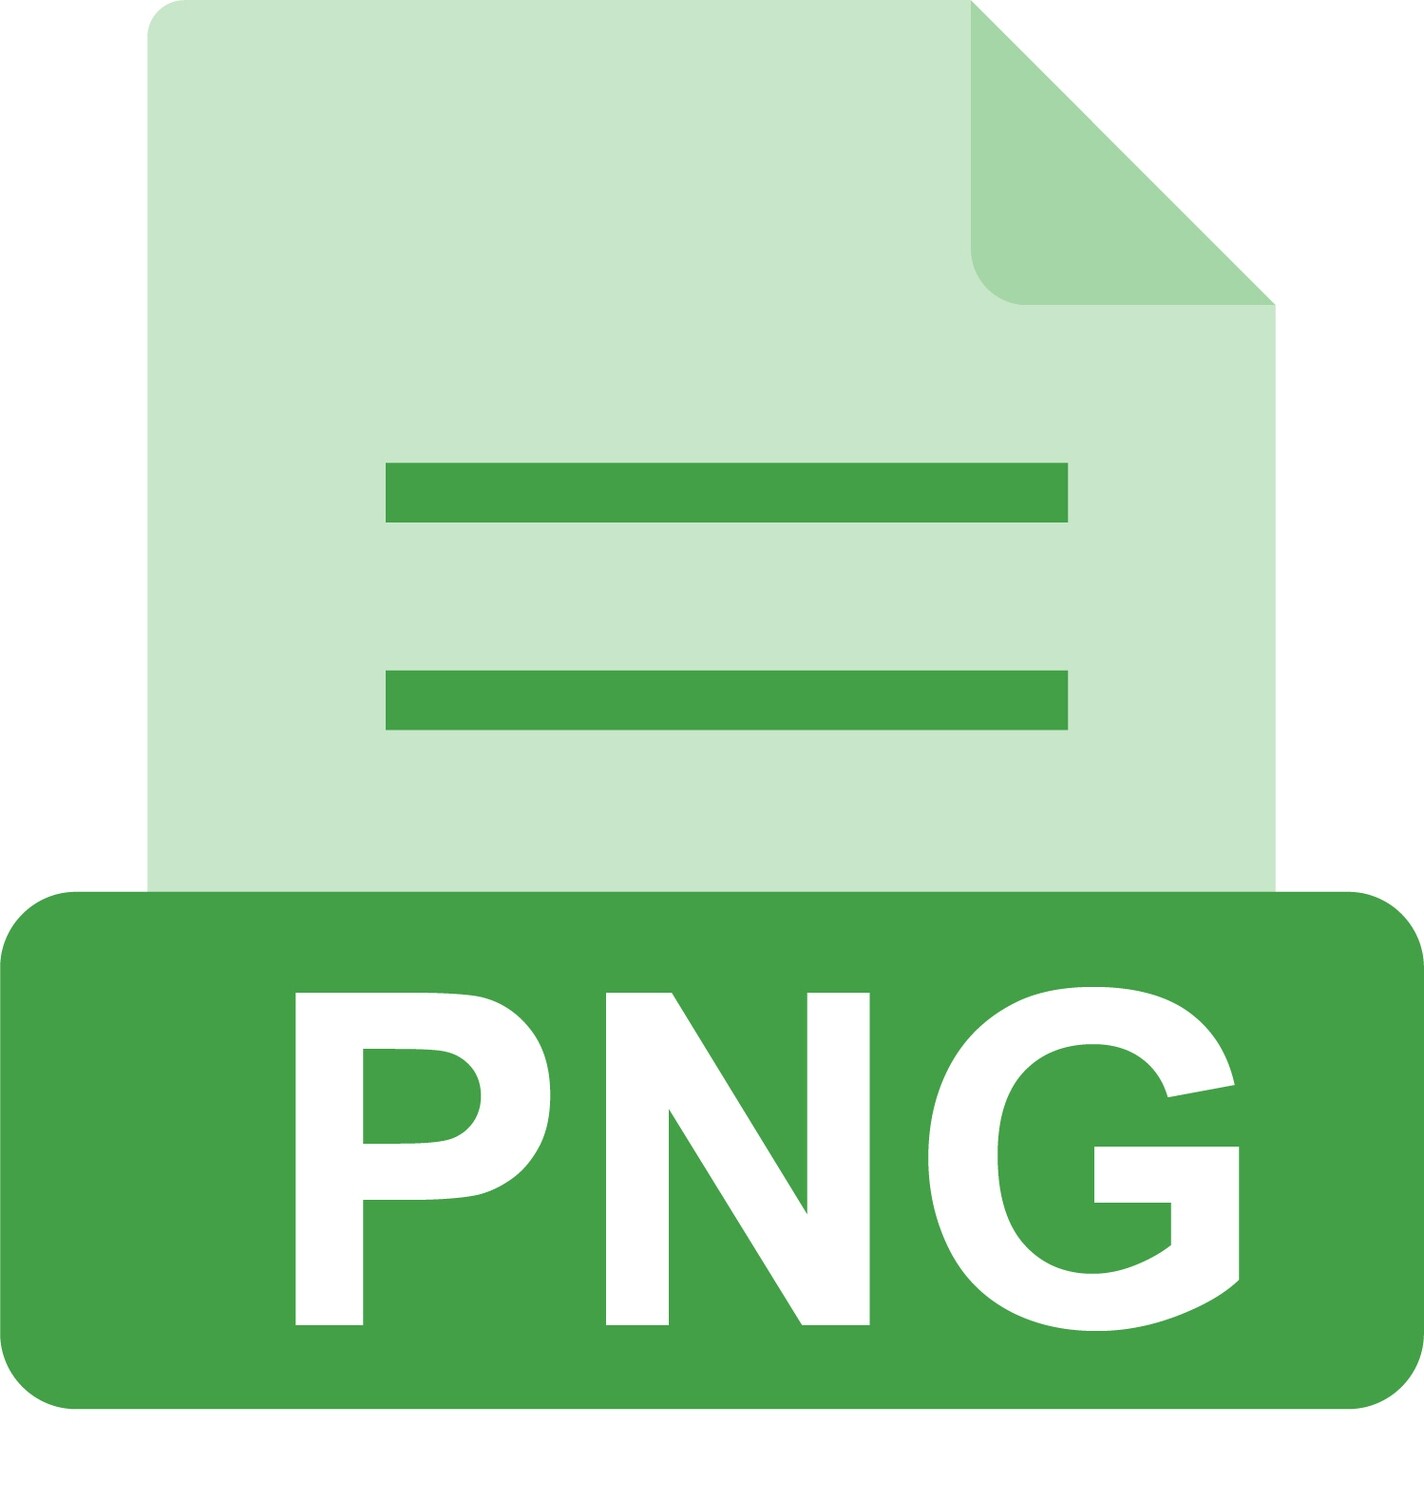 E-File: PNG, Landscape Architect California